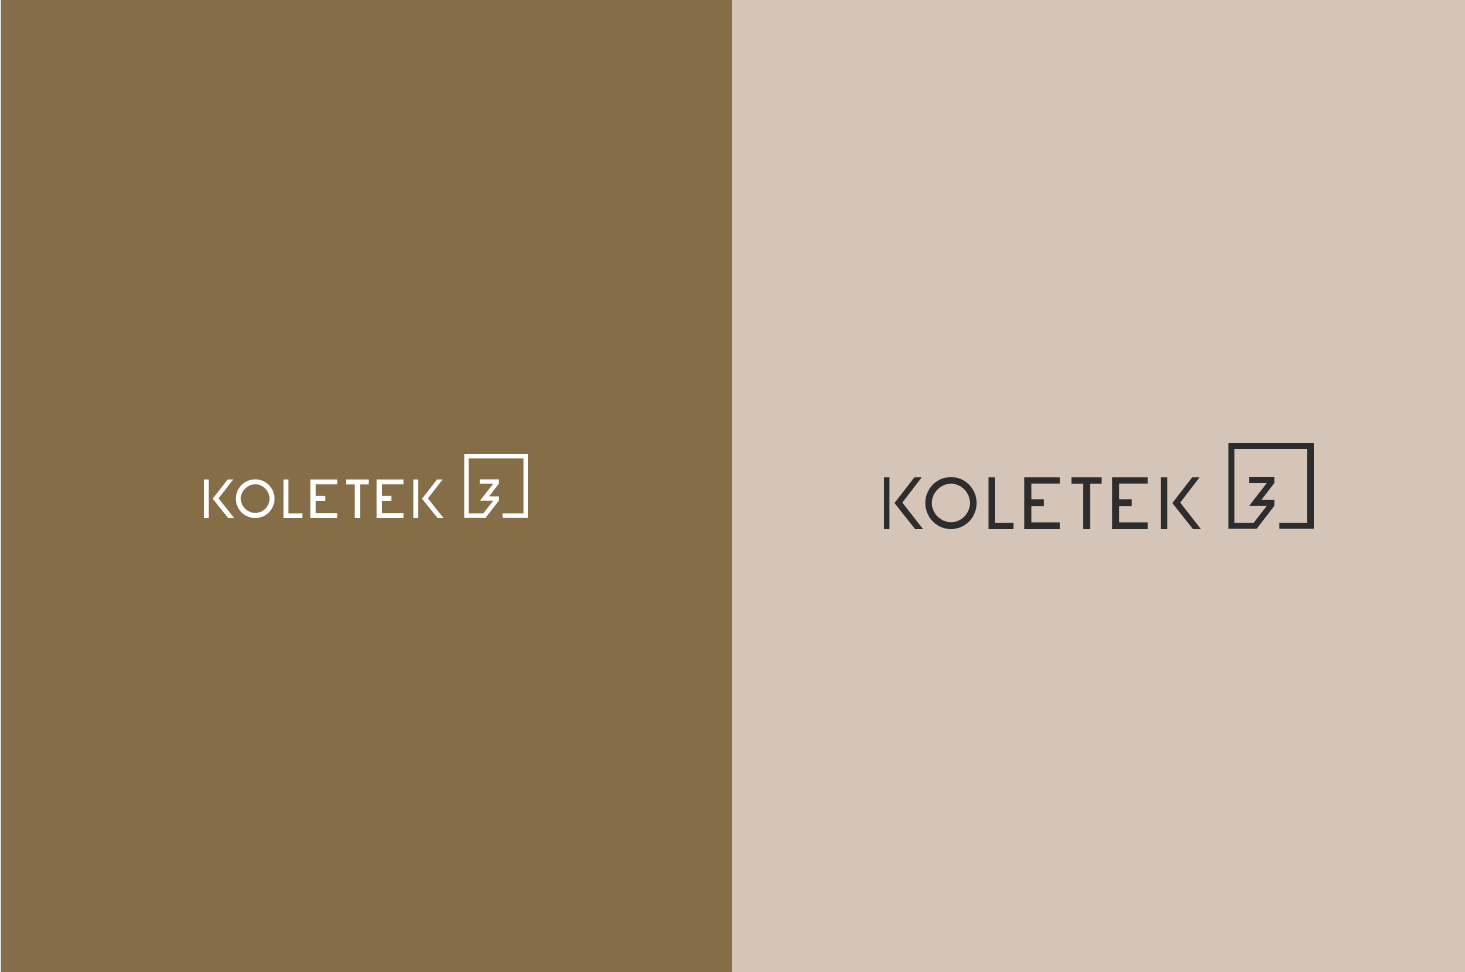 koletek3-logo3.png